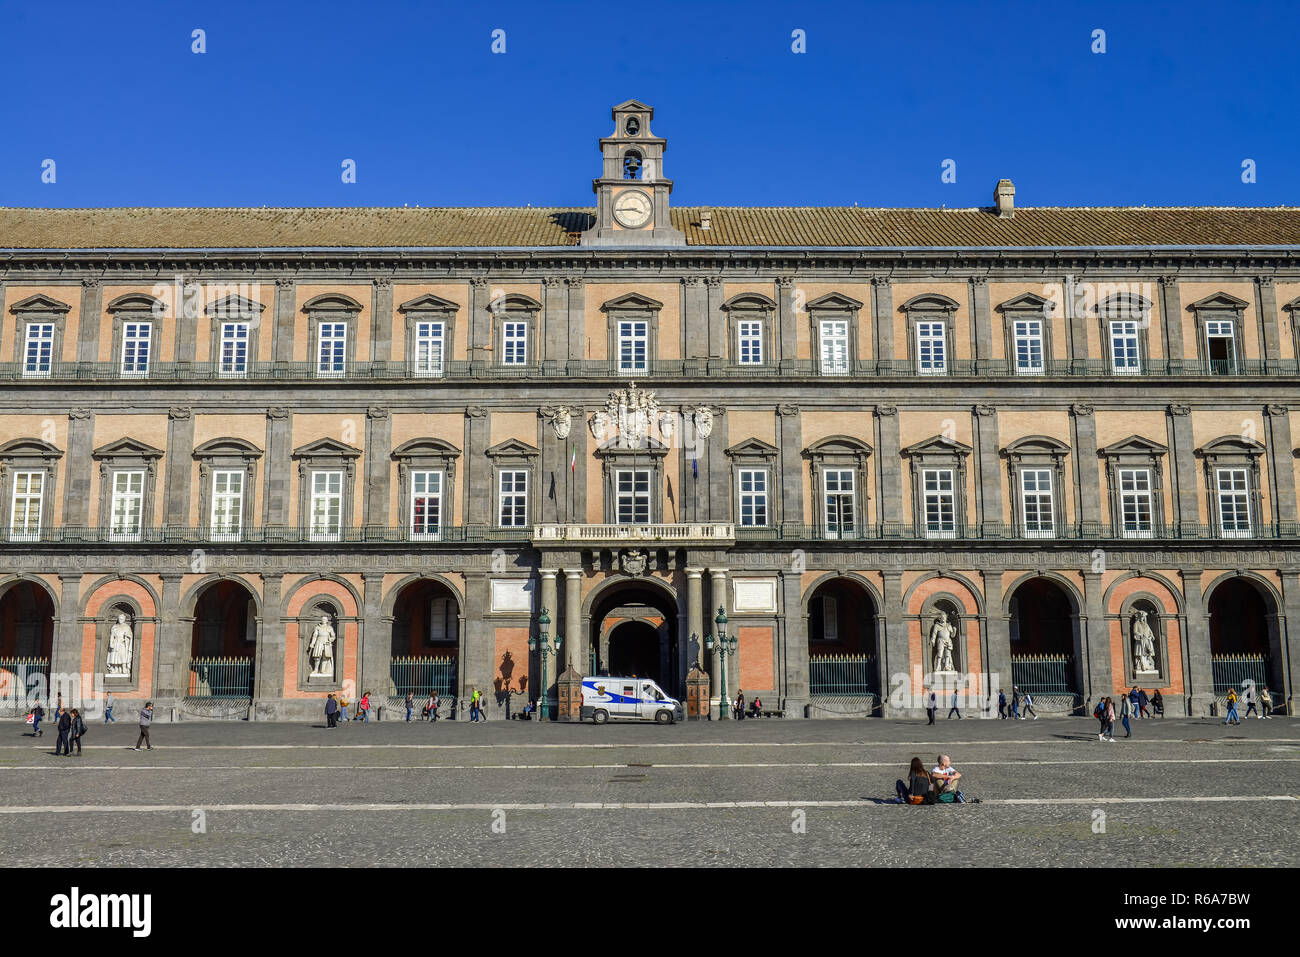 King's Palace, Palazzo Reale, Piazza del Plebescito, Neapel, Italien, Koenigspalast, Palazzo Reale, Neapel, Italien Stockfoto